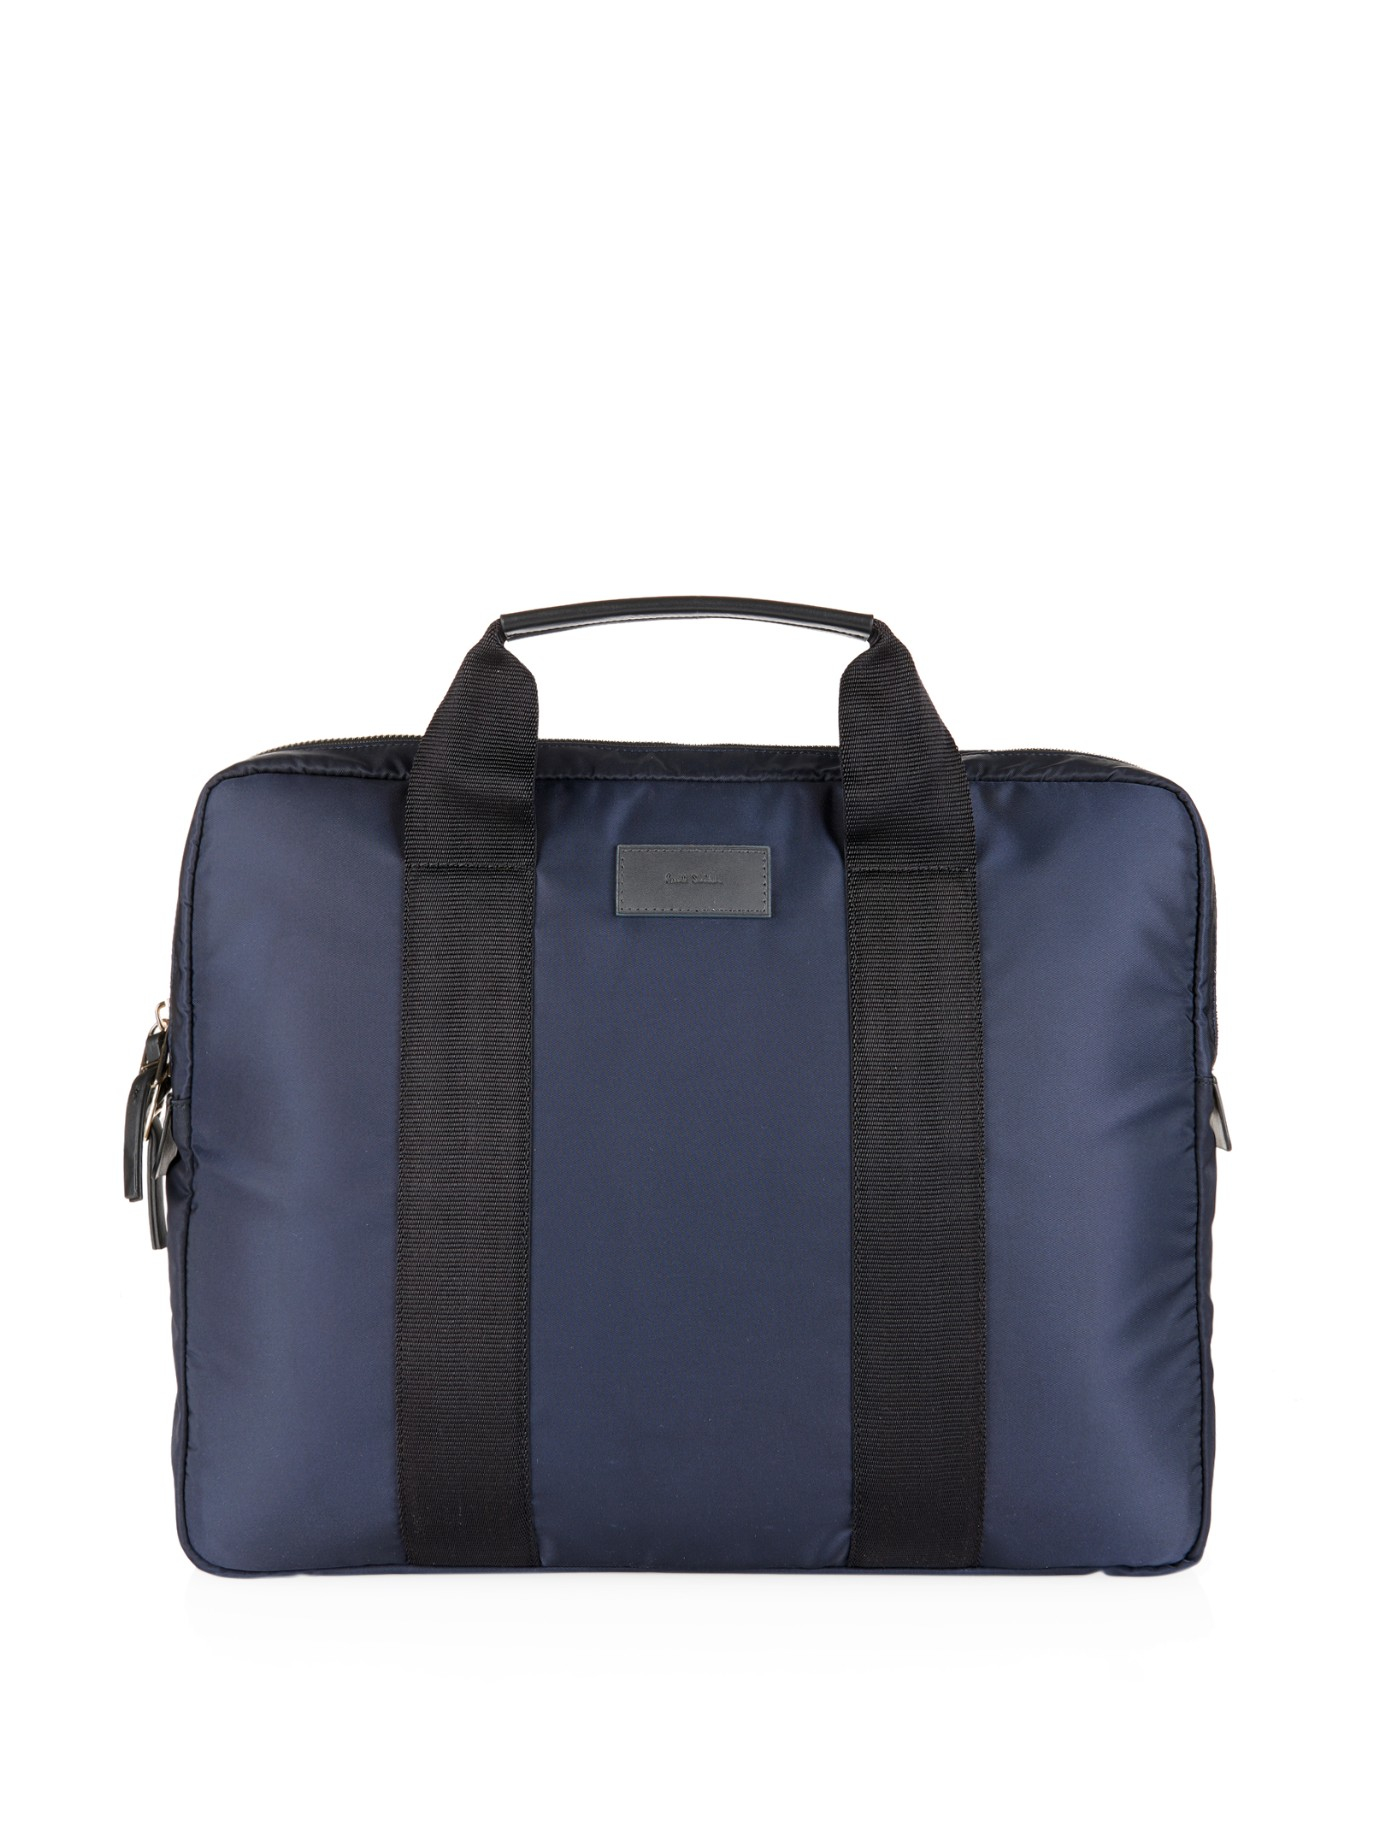 Lyst - Paul Smith Nylon Laptop Bag in Blue for Men